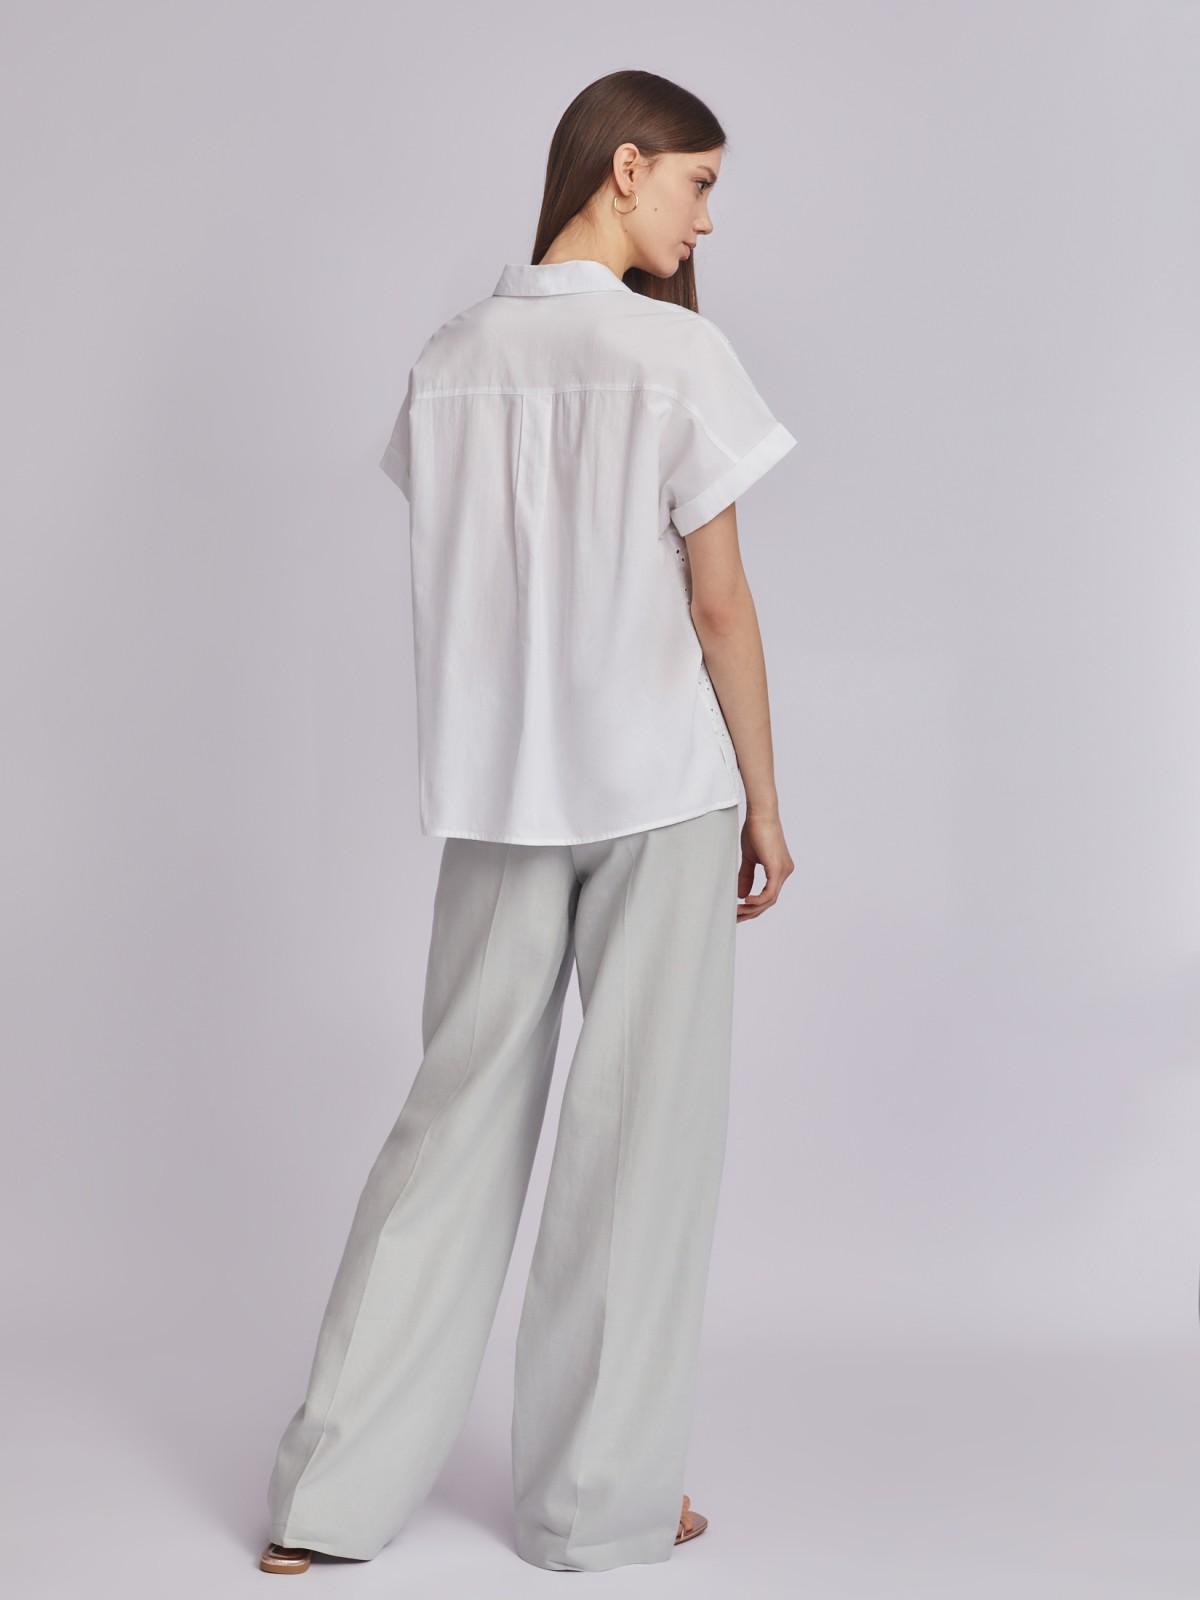 Рубашка из хлопка с коротким рукавом и ажурной вышивкой zolla 023251259023, цвет белый, размер XS - фото 6